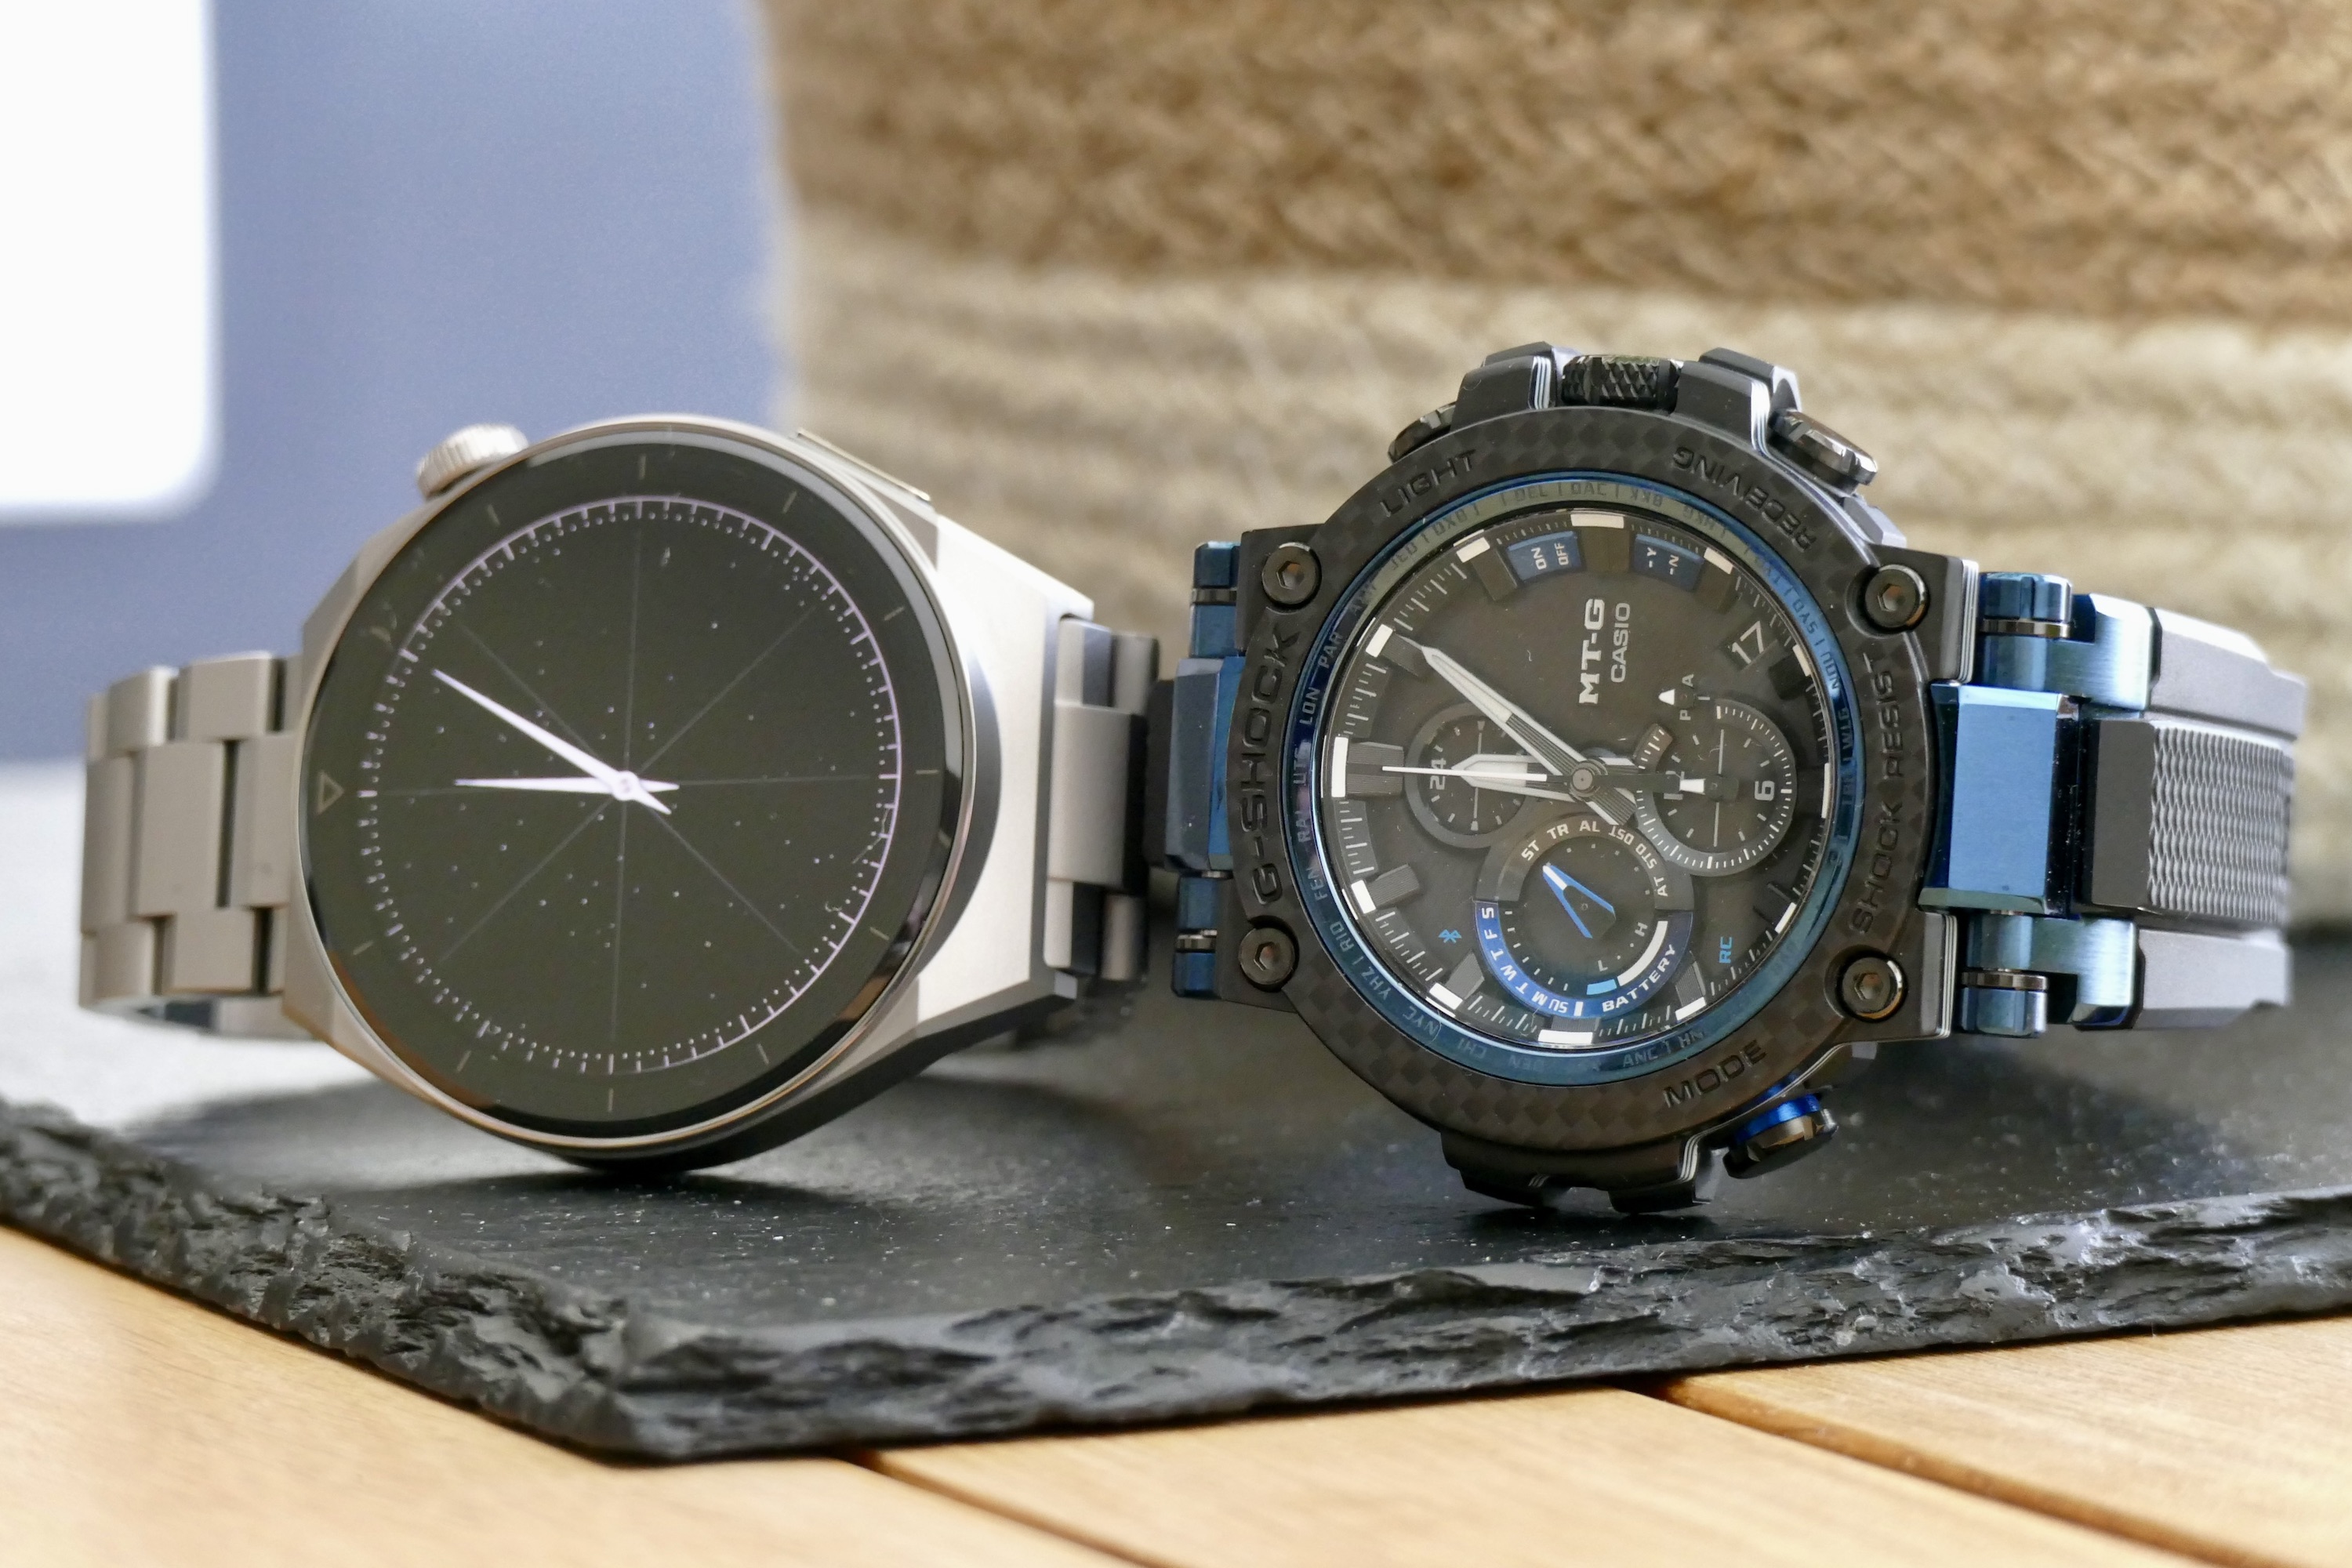 Huawei Watch GT 3 Pro with G-Shock MTG B1000 watch.